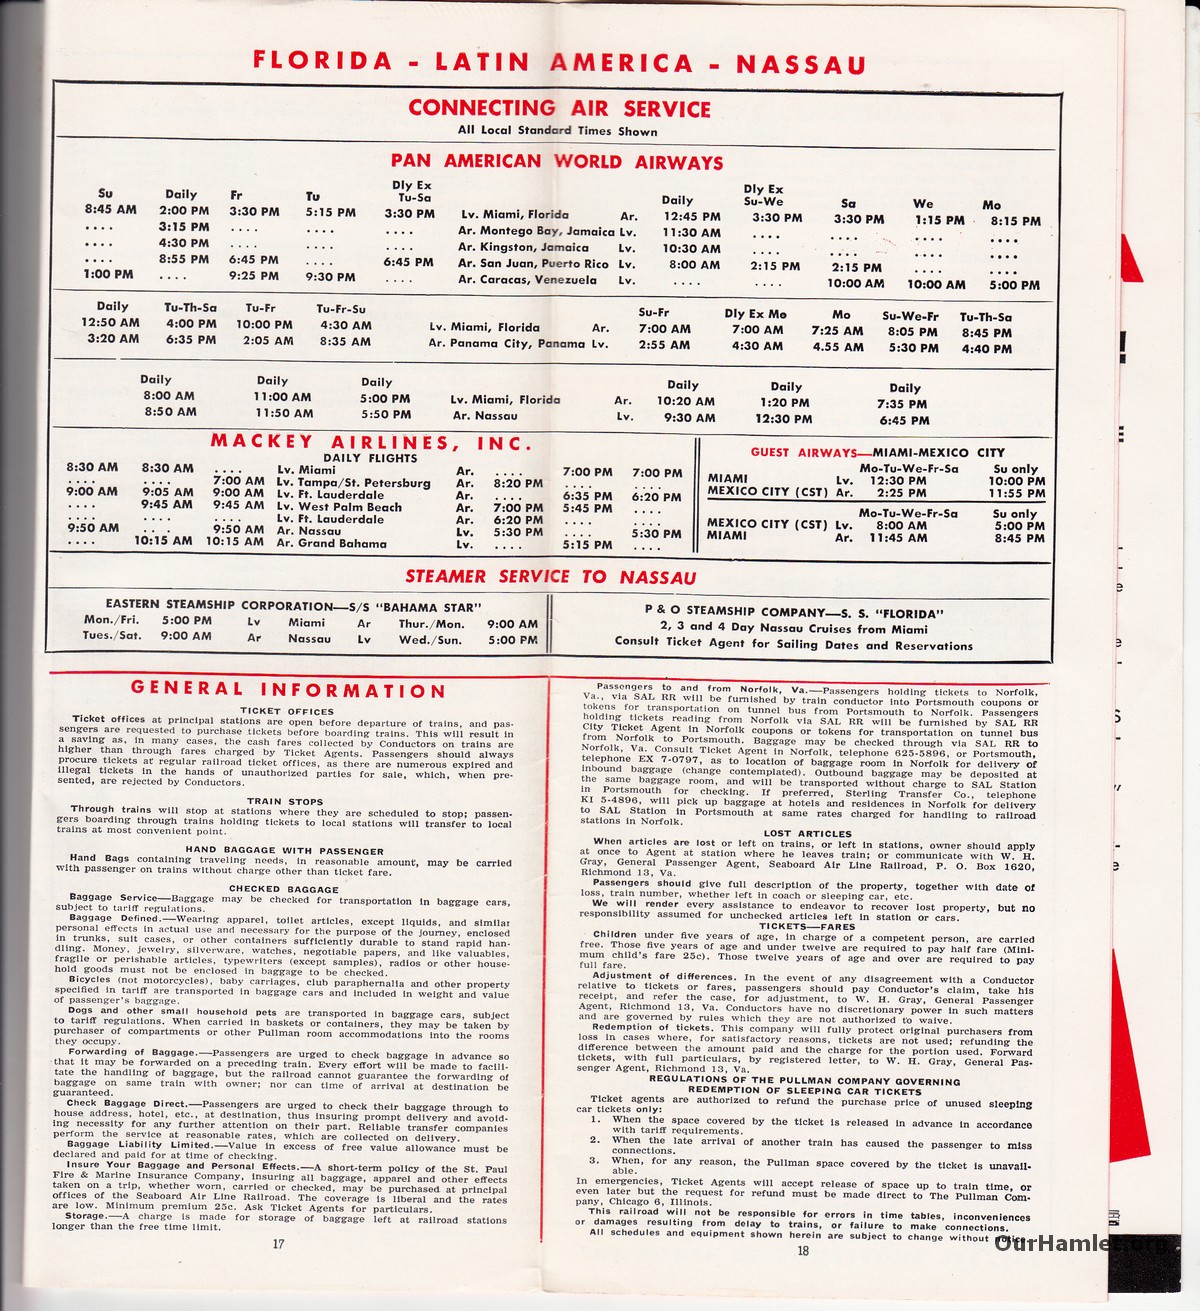 Seaboard Schedule Dec 1962_0010OH.jpg